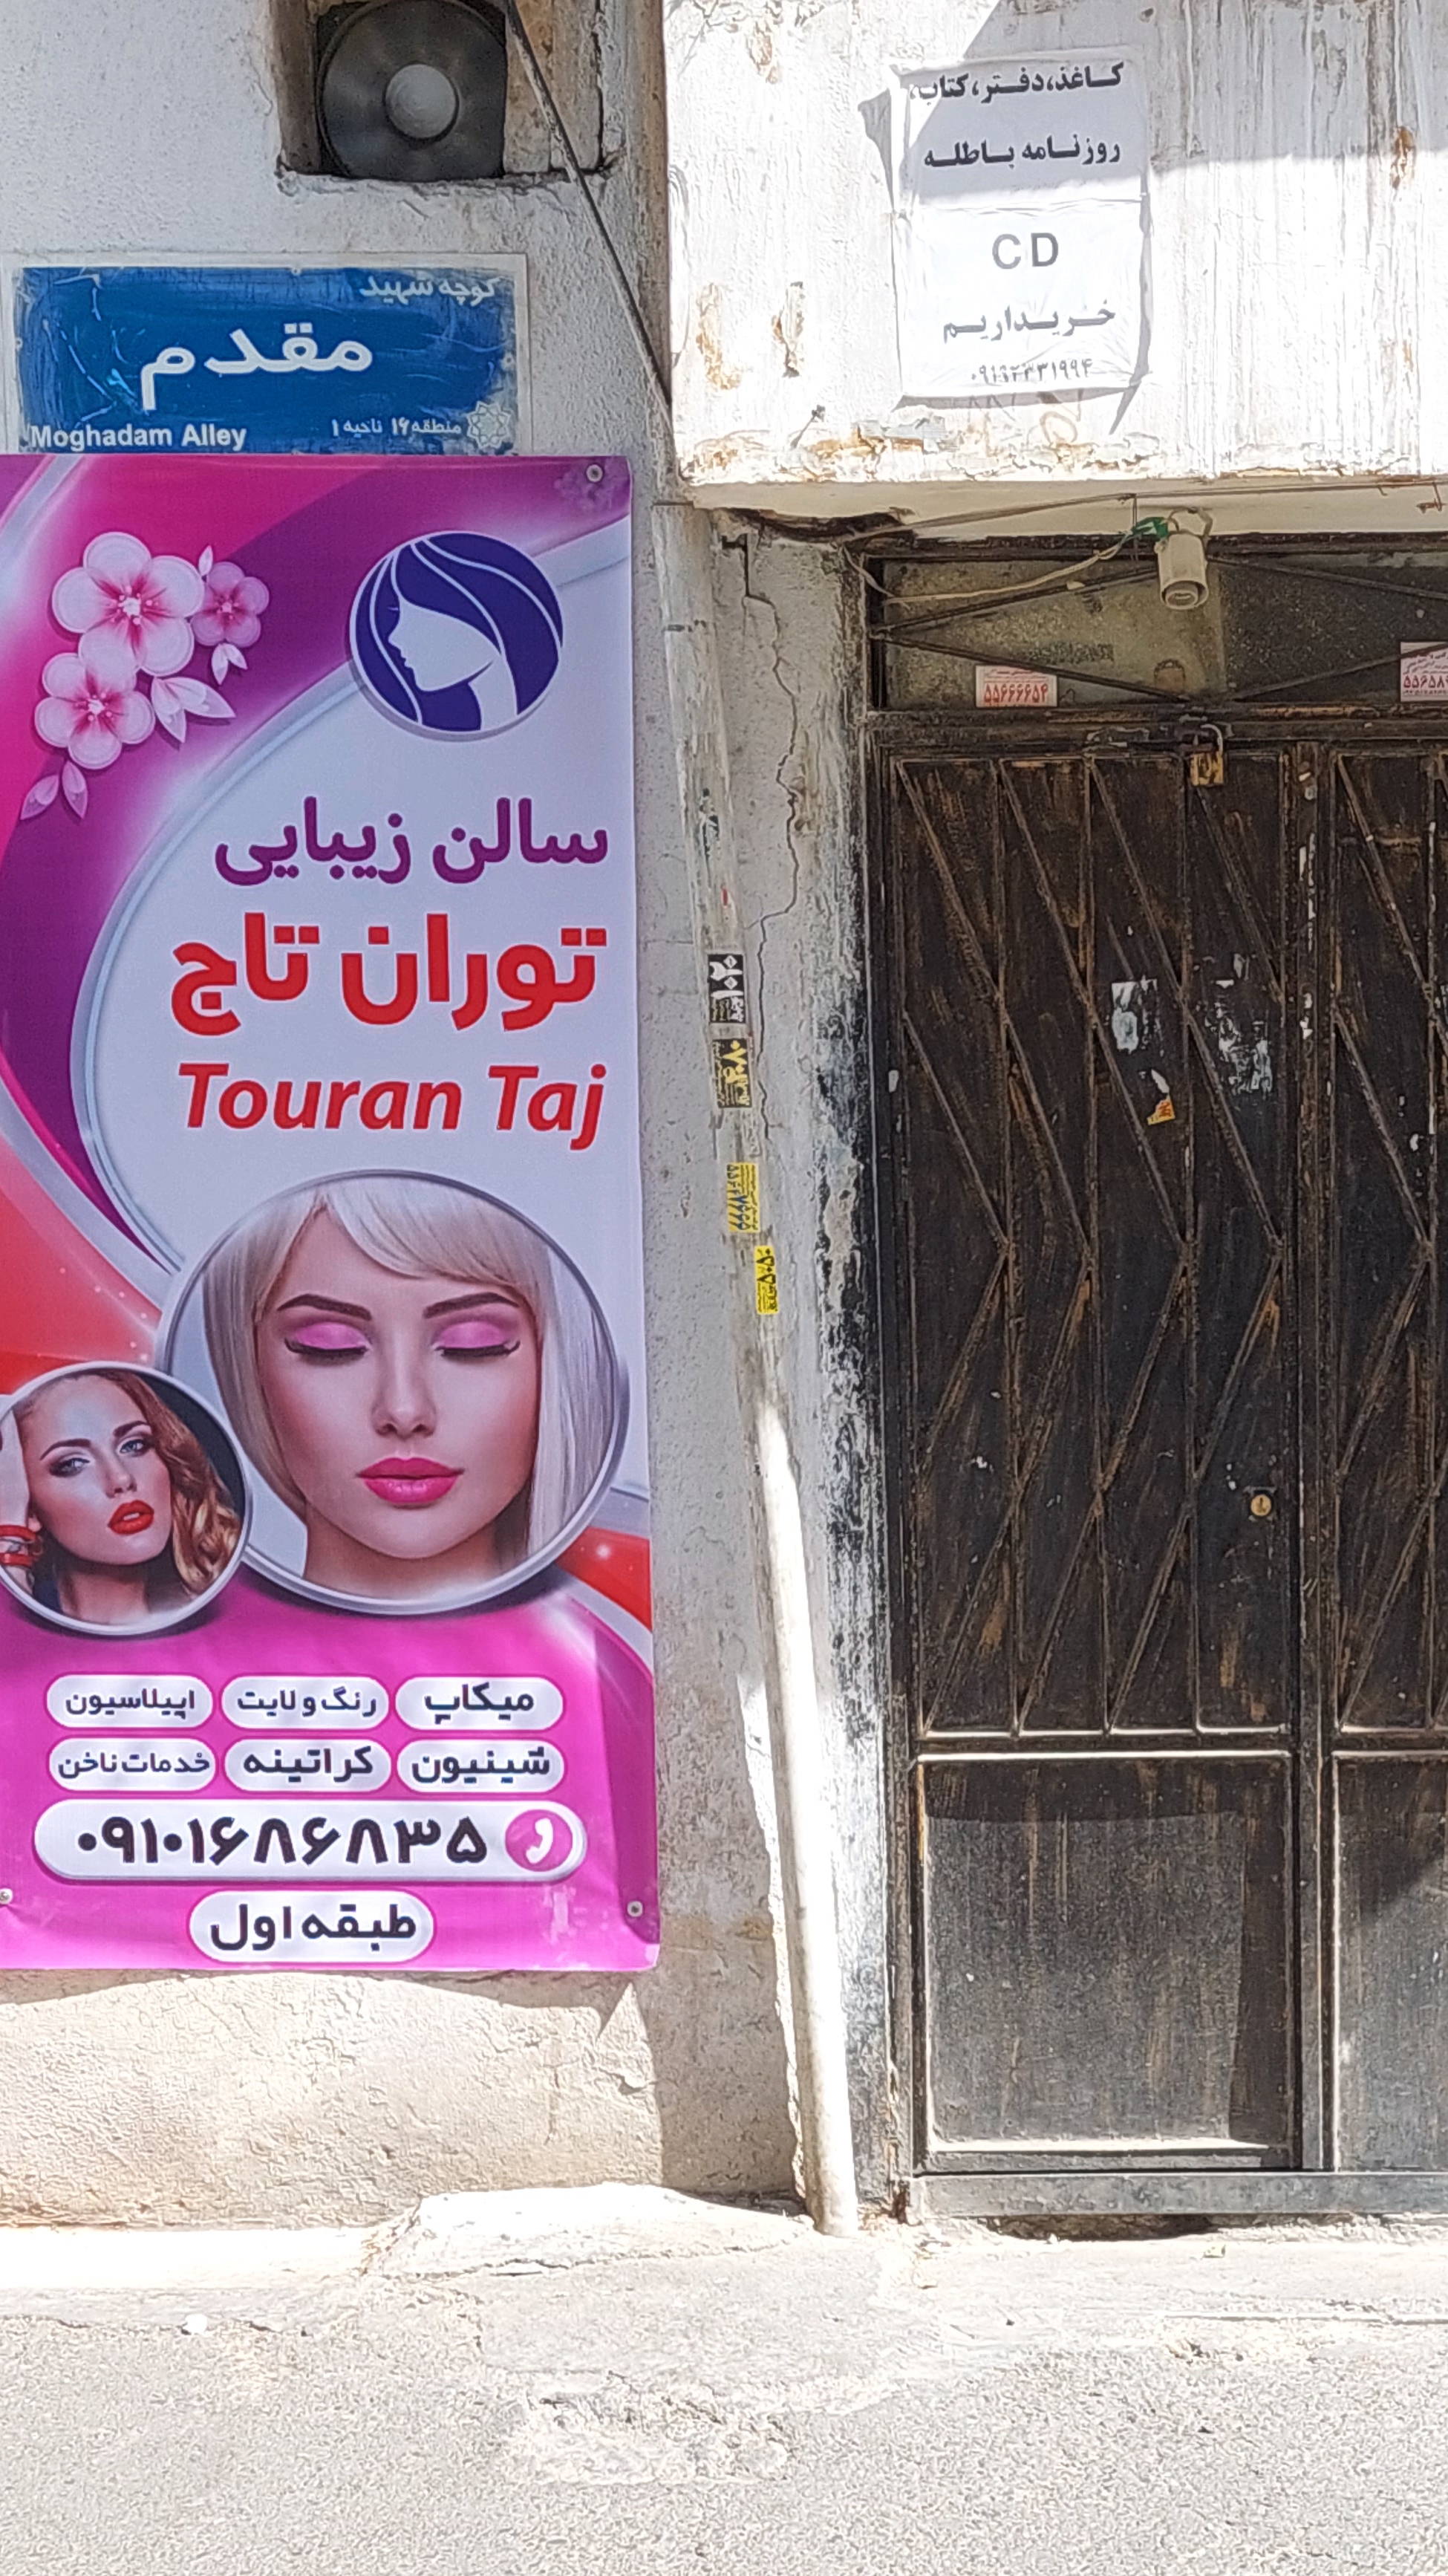 آرایشگاه و آموزشگاه زیبایی توران تاج